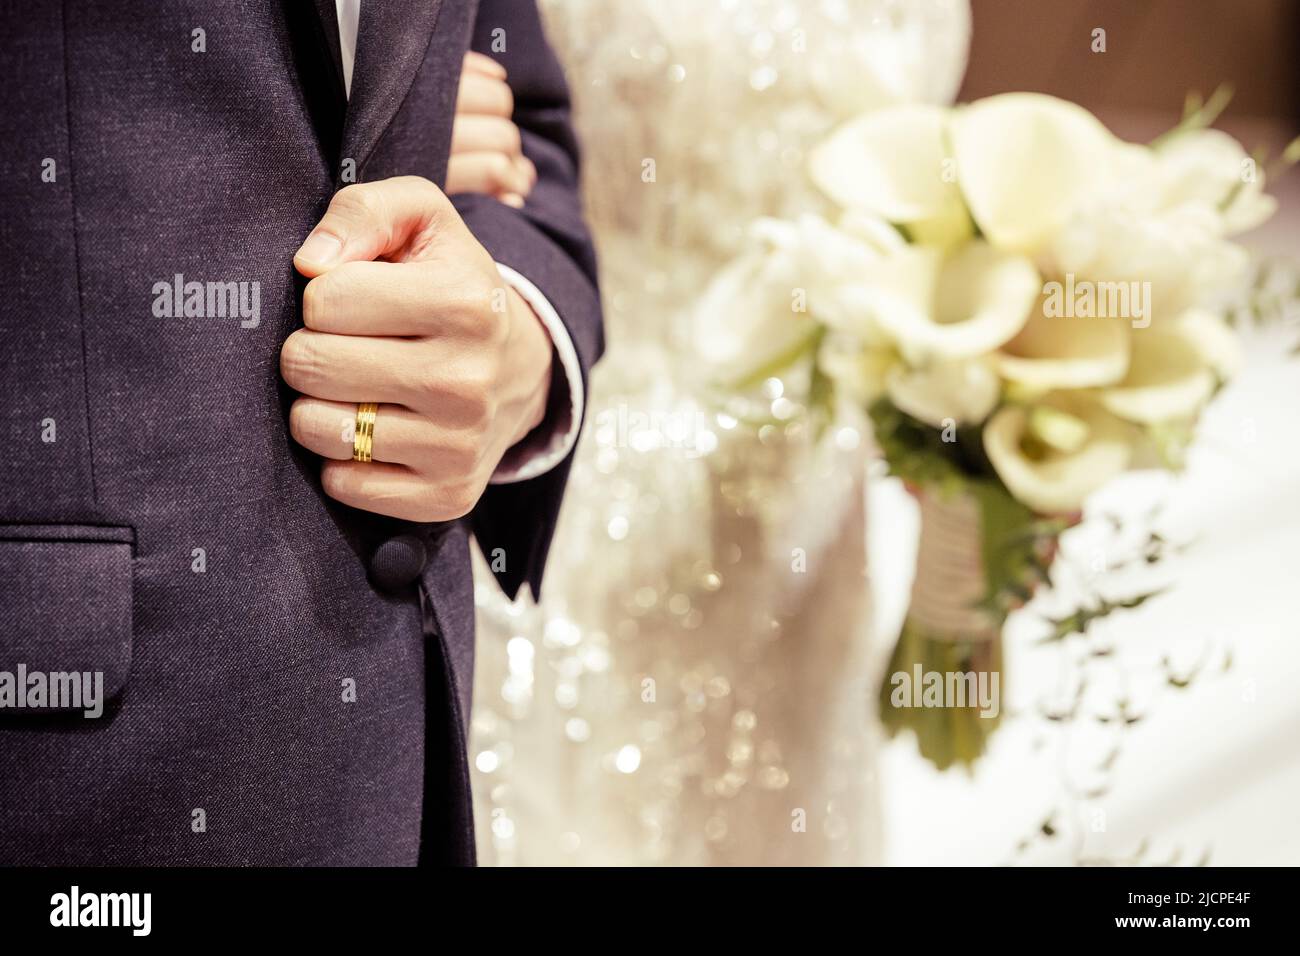 Une image en gros plan de l'anneau de mariage du marié dans le lieu de mariage Banque D'Images